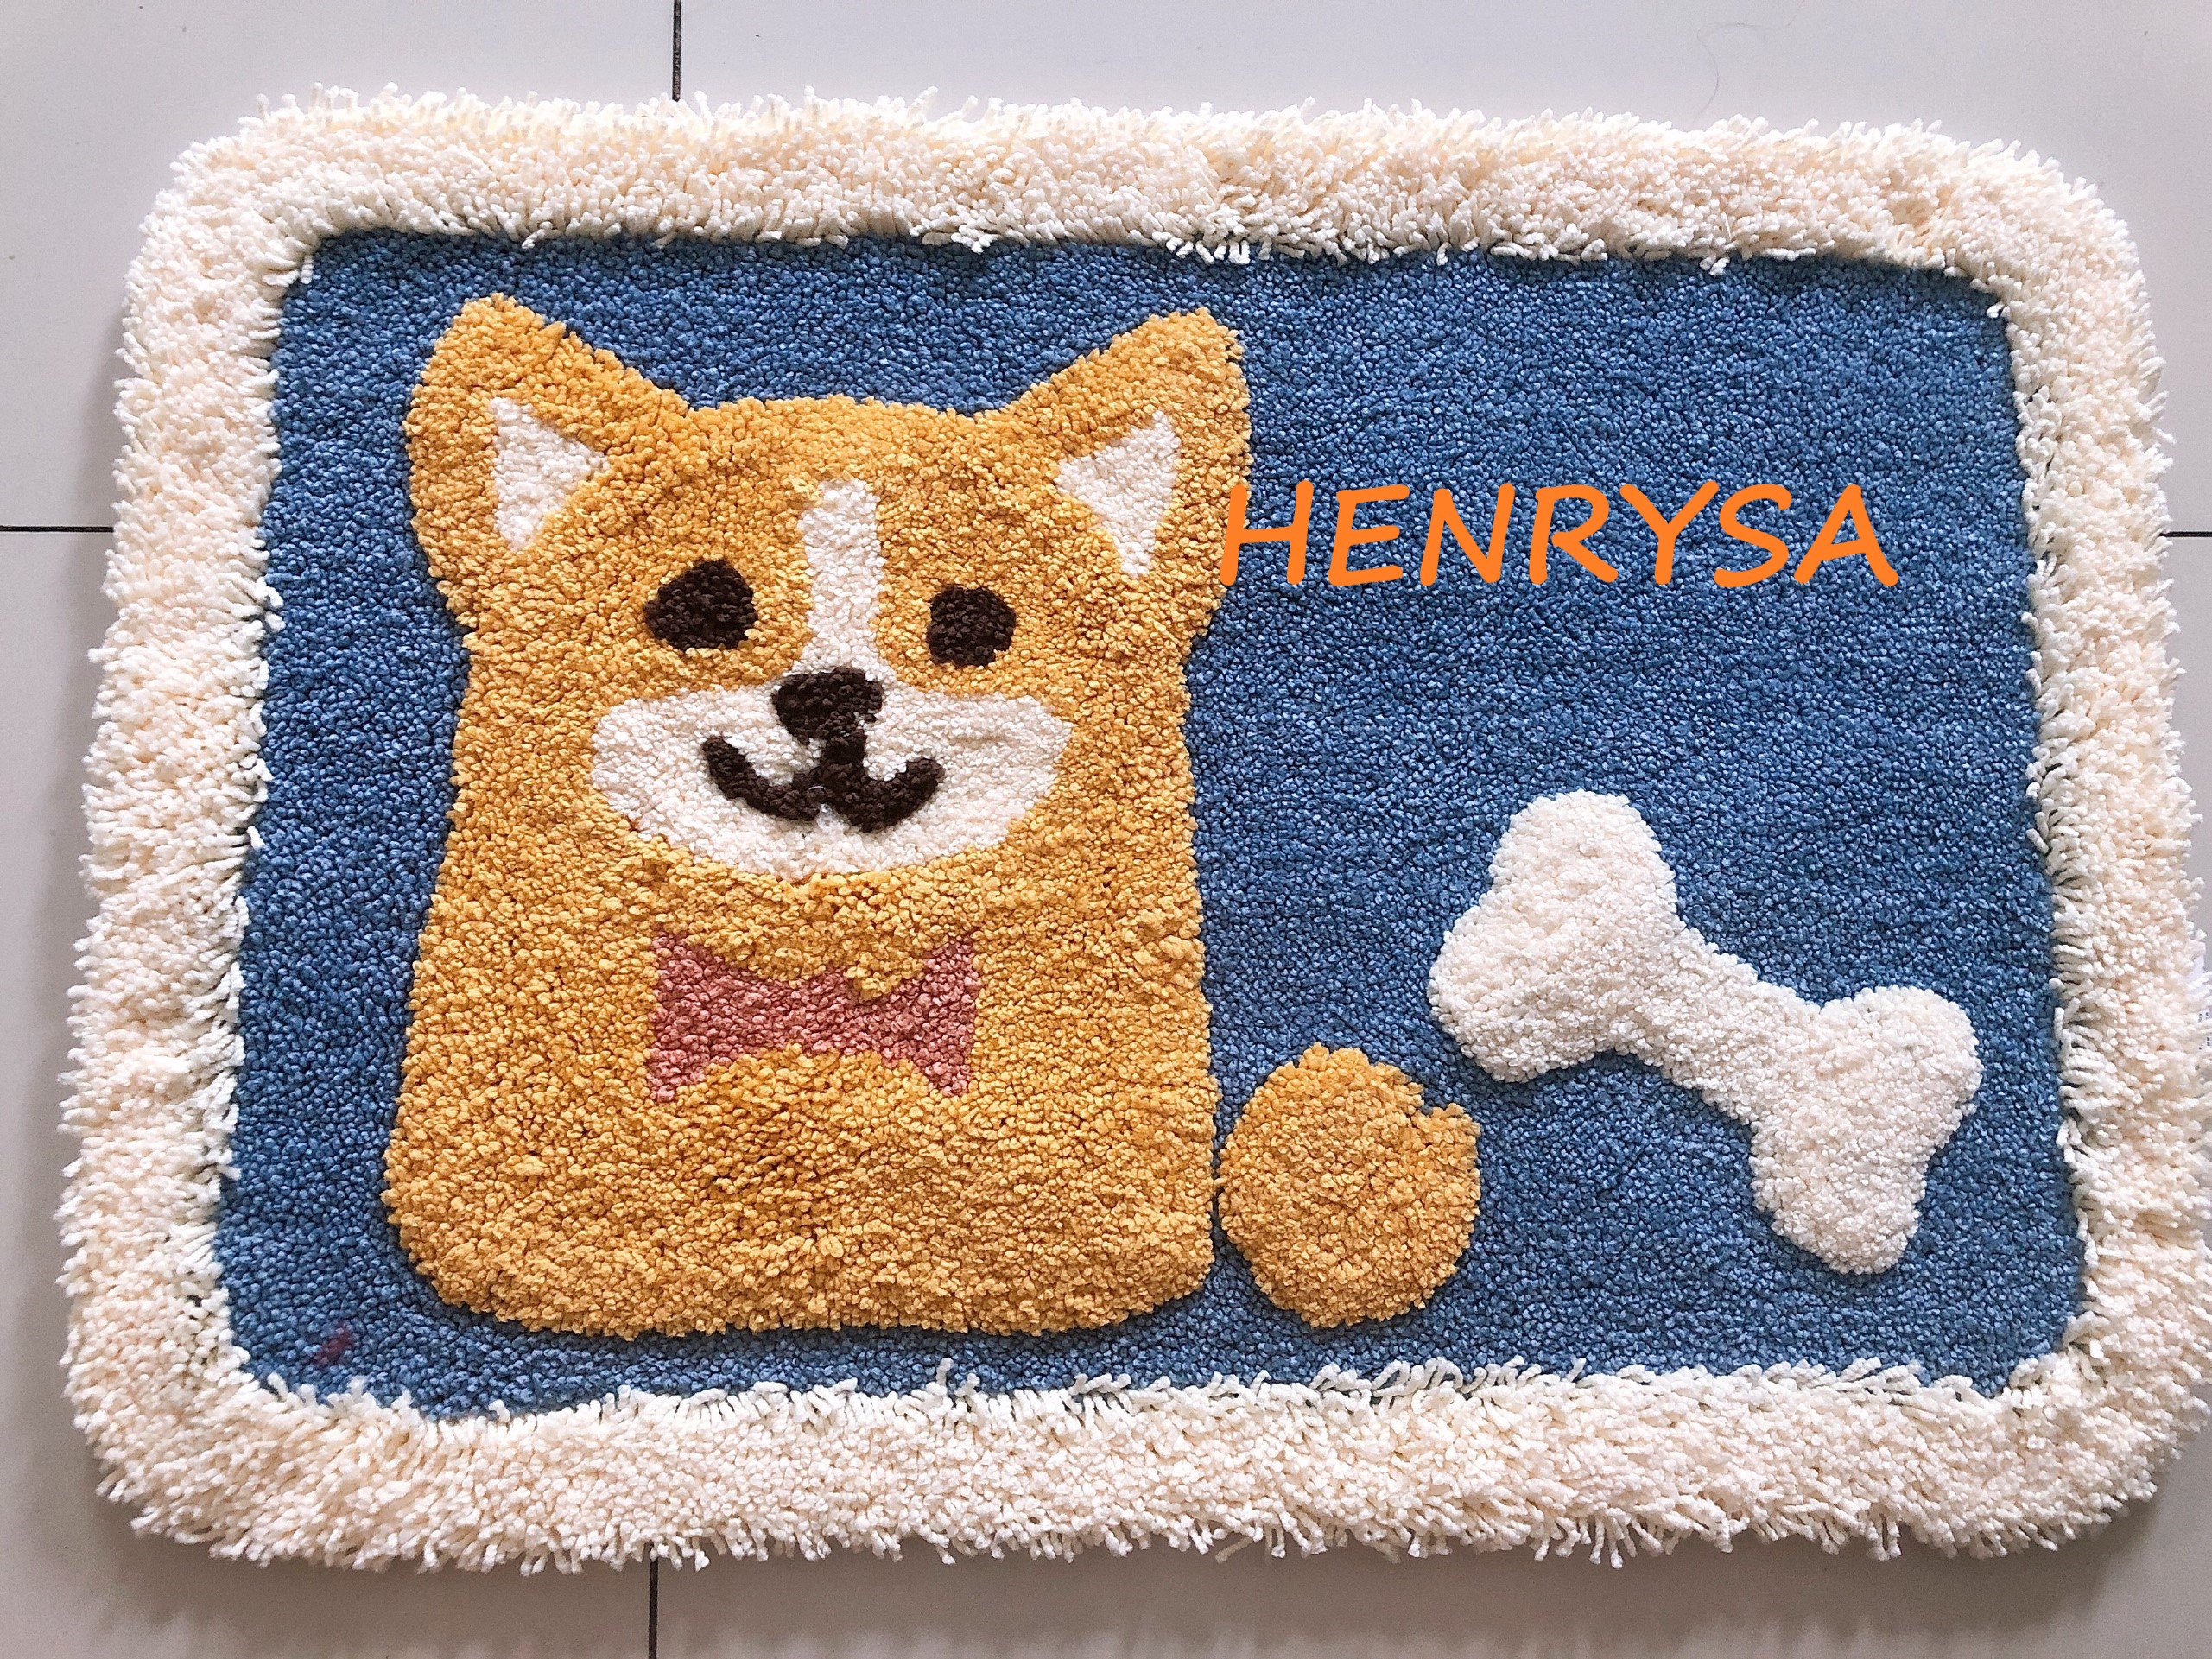 Tham lau chân - Thảm chân hình chú chó shiba 45x65cm cao cấp, chất liệu cotton thấm hút nước tốt - Chính hãng Henrysa